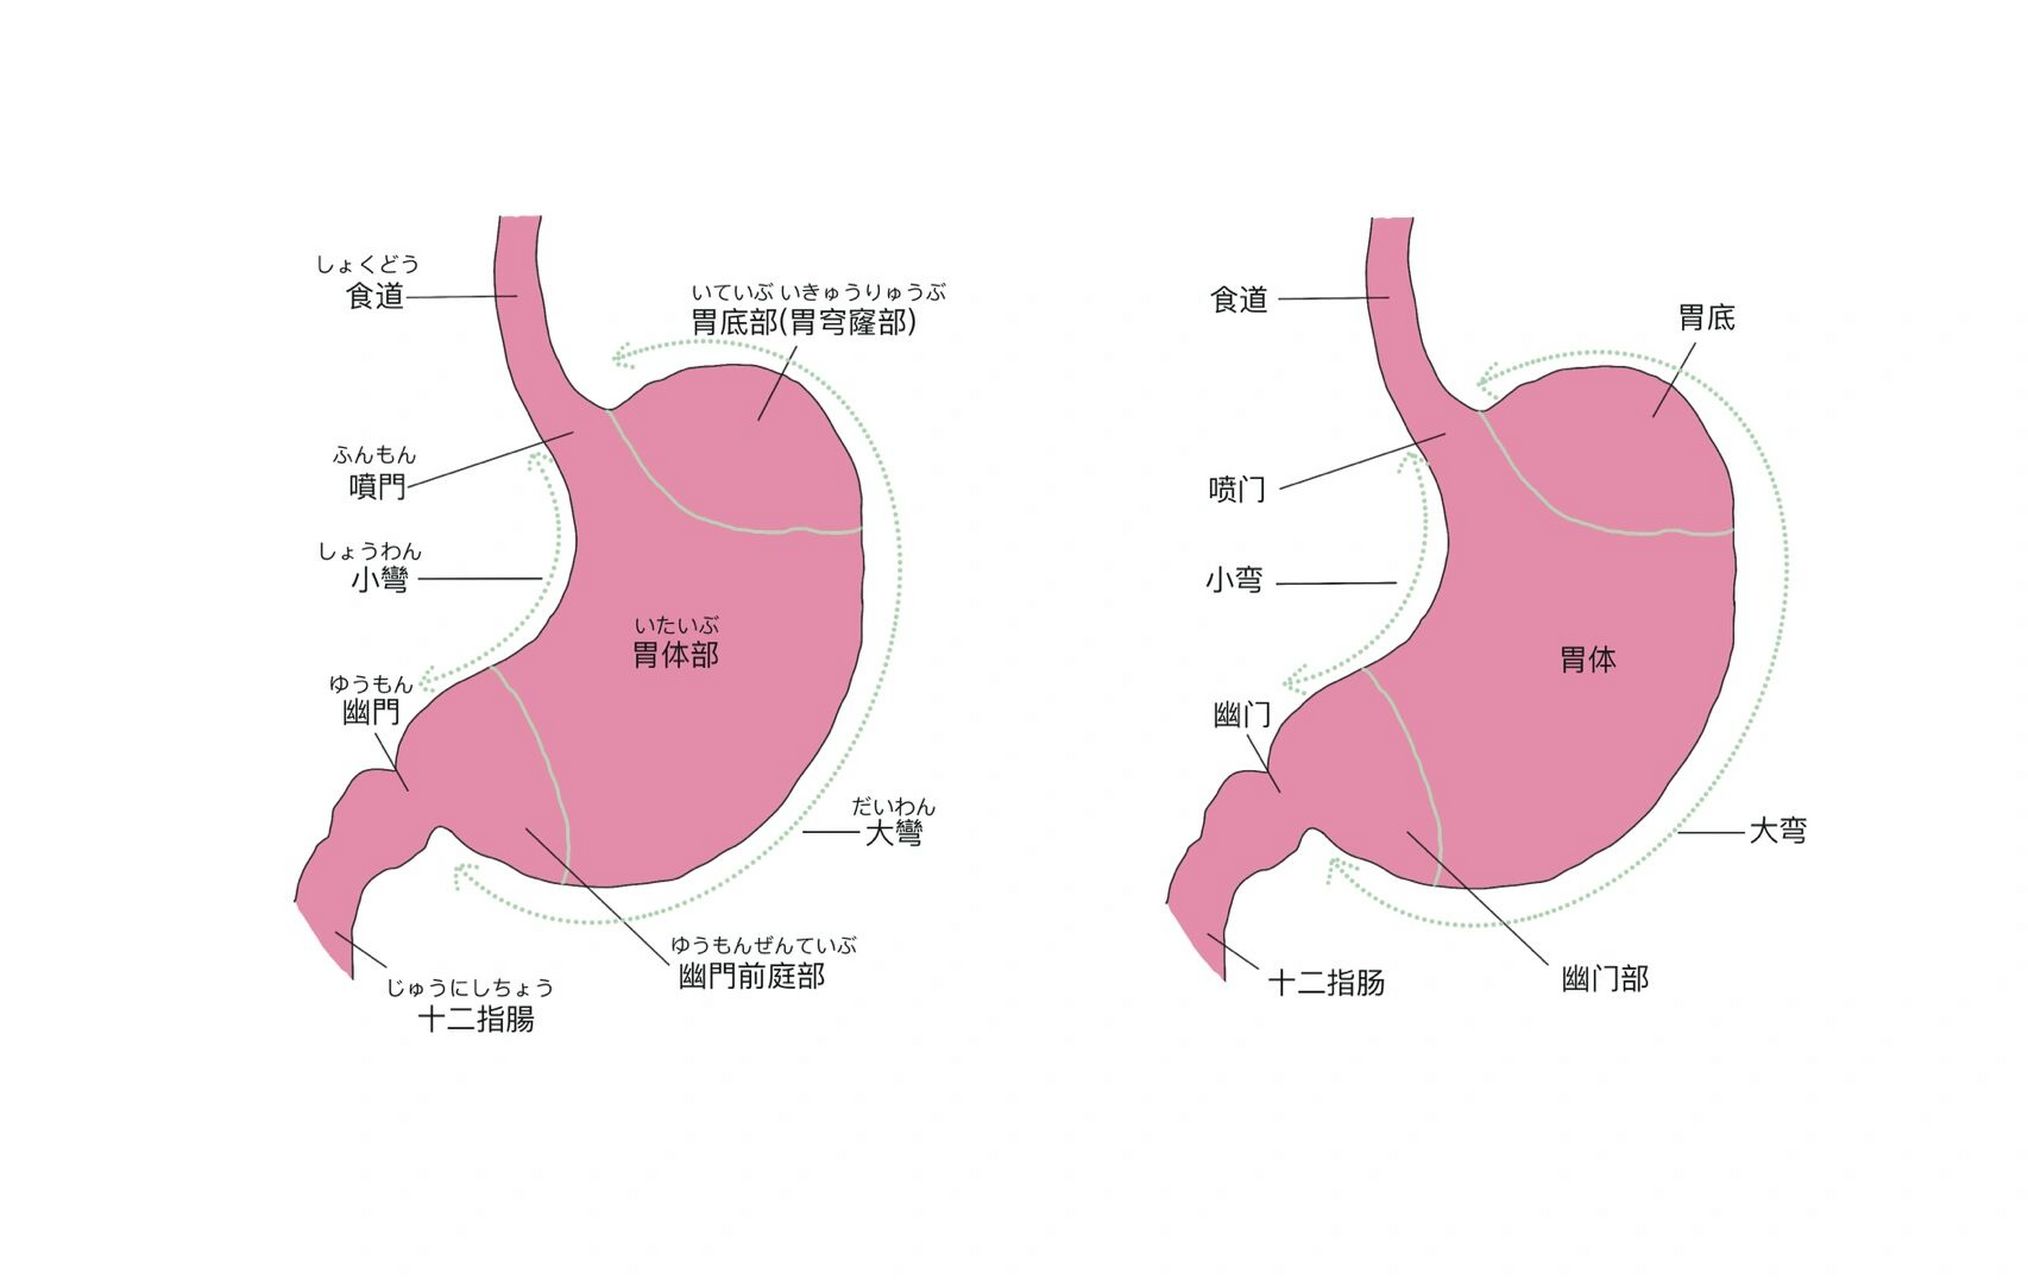 胃部形态图图片